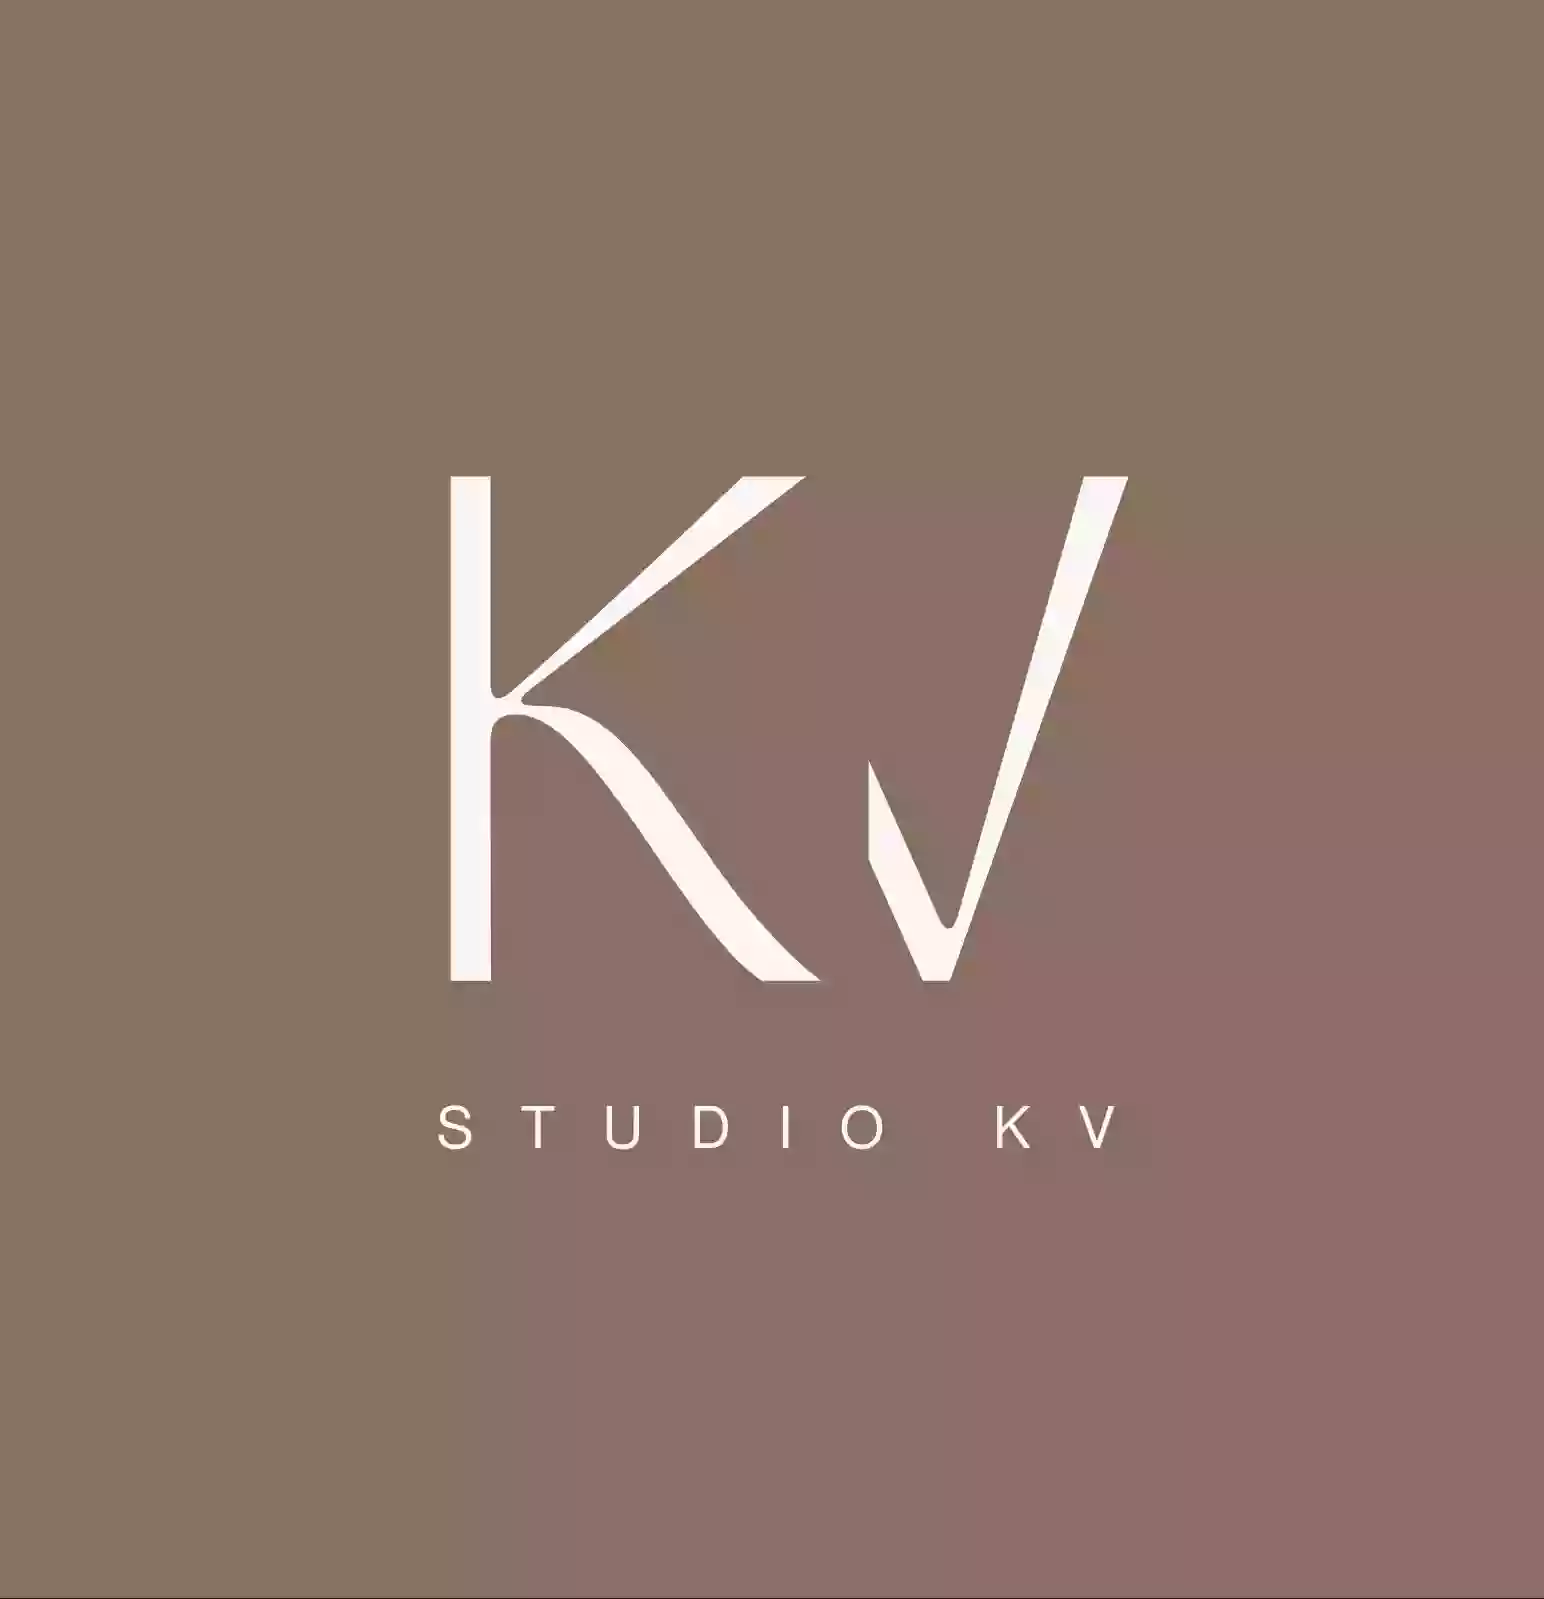 Studio KV